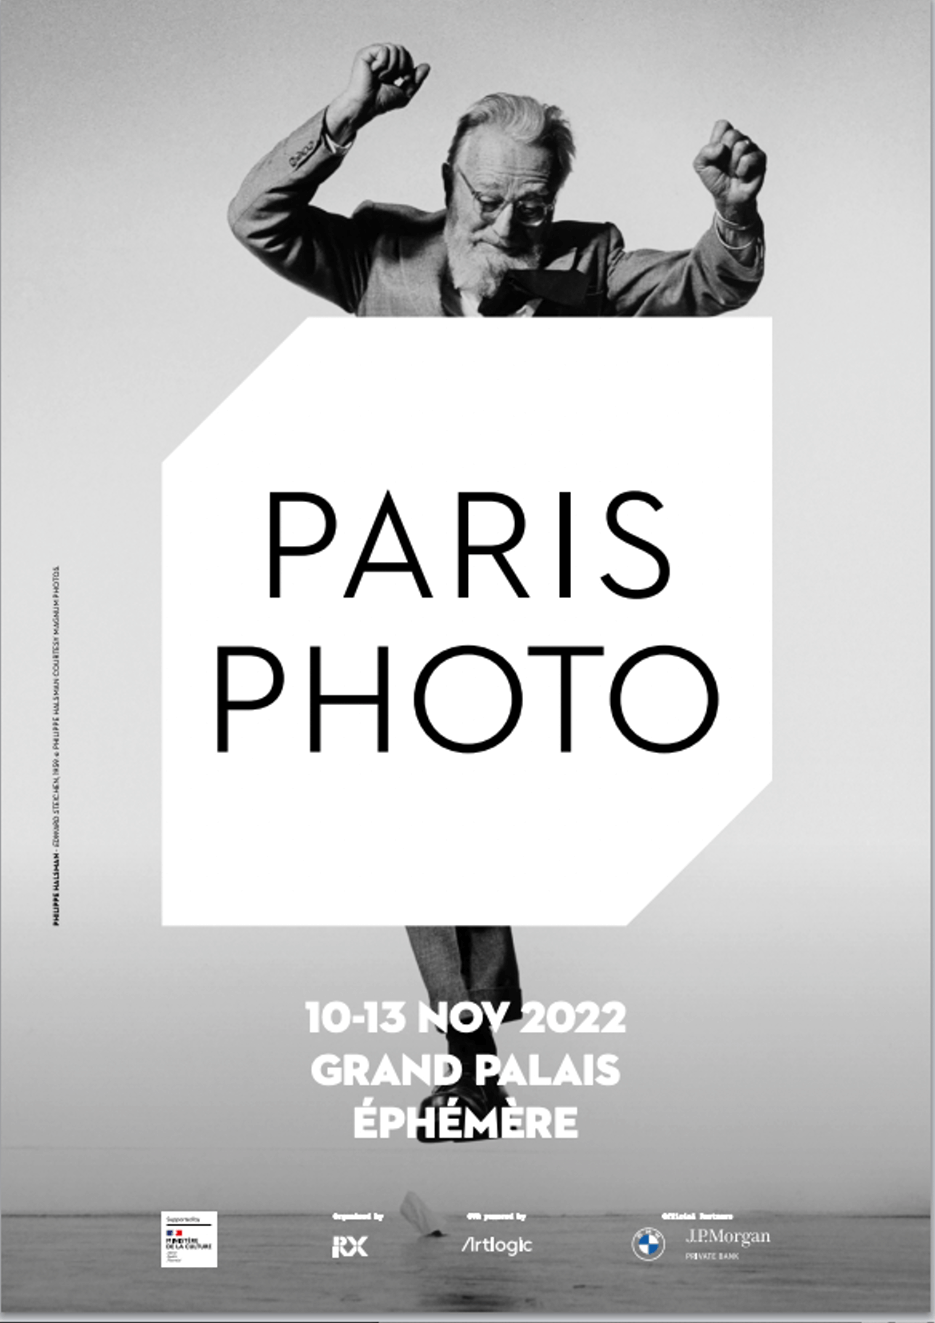 Poster for Paris Photo art exhibition